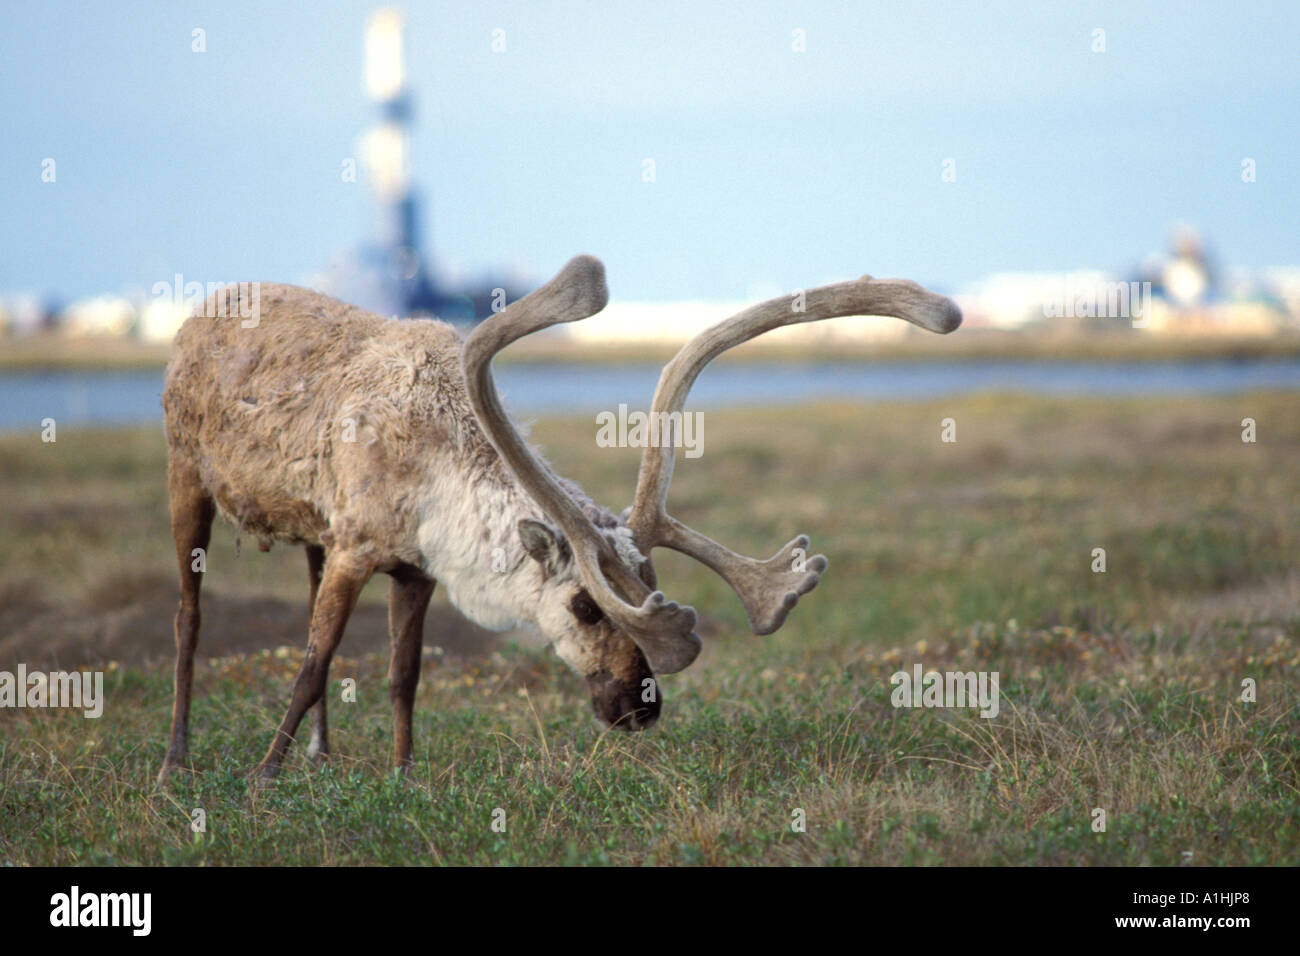 Le caribou de la toundra Rangifer tarandus bull avec ses bois de velours se nourrir près de la ville pétrolière de Prudhoe Bay en Alaska arctique Banque D'Images